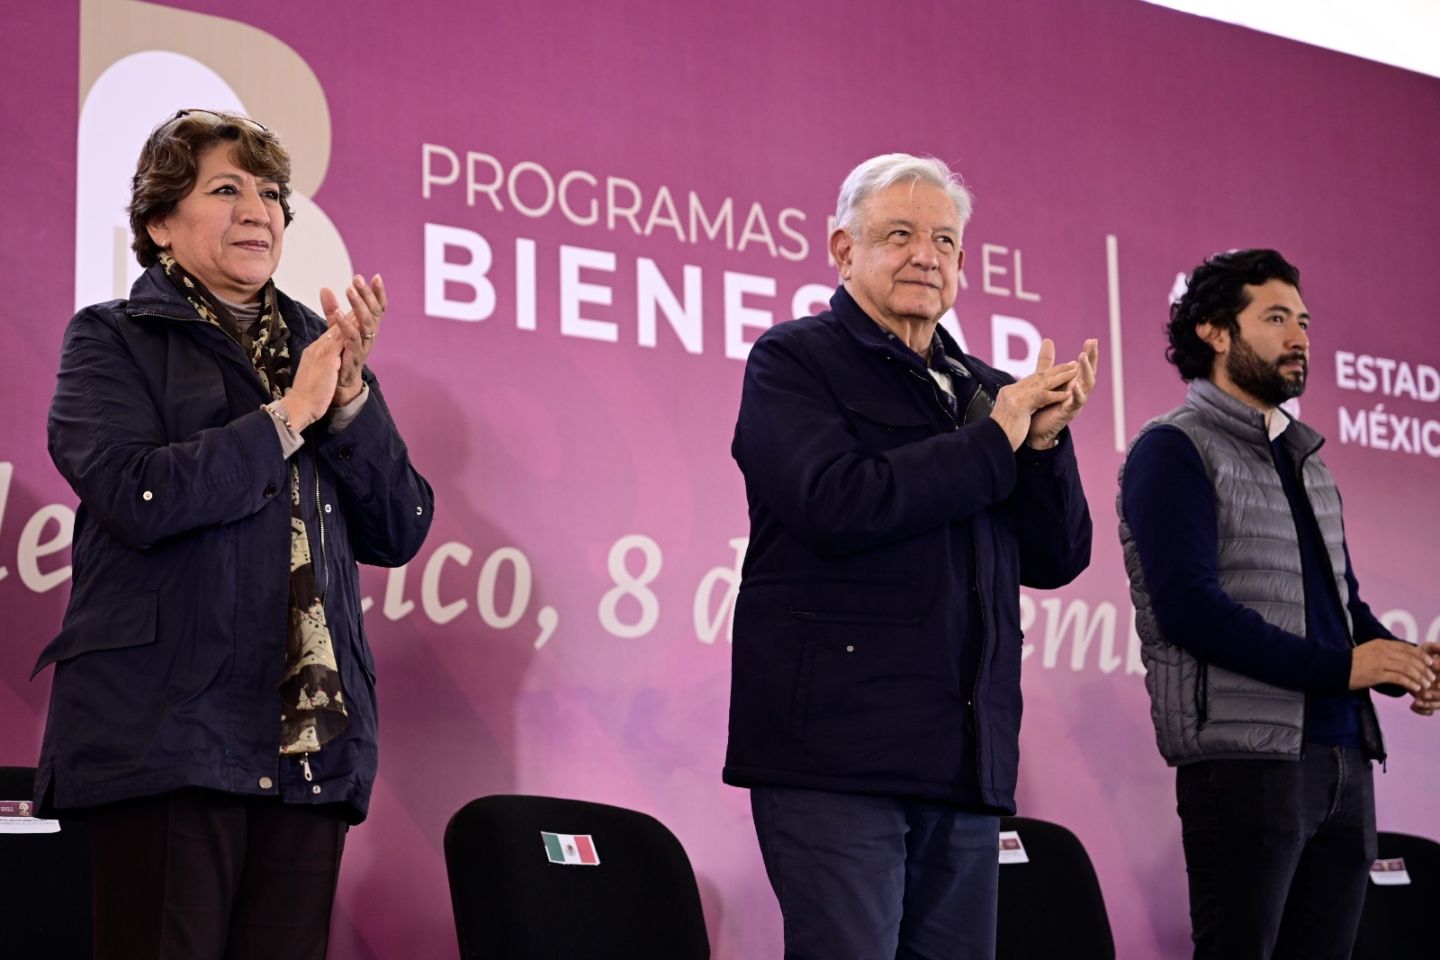 Programas del bienestar transformarán al Estado de México, afirman AMLO y Delfina Gómez 